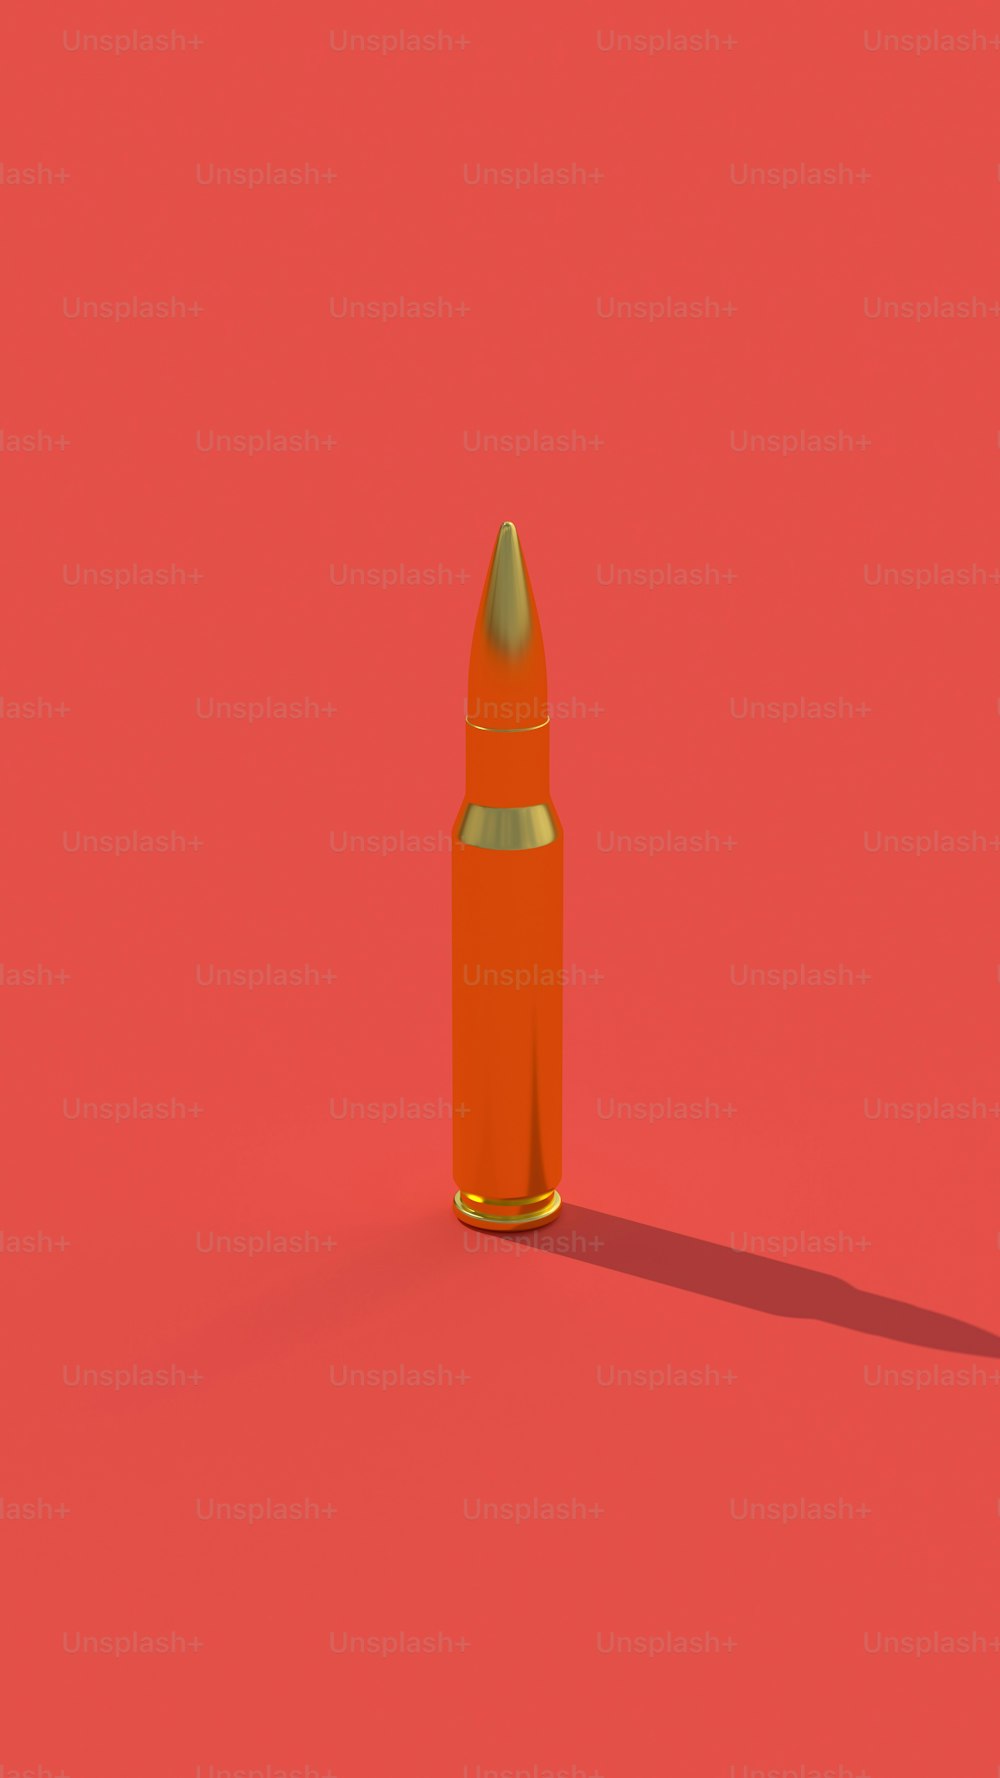 Eine orangefarbene Kugel auf rotem Hintergrund